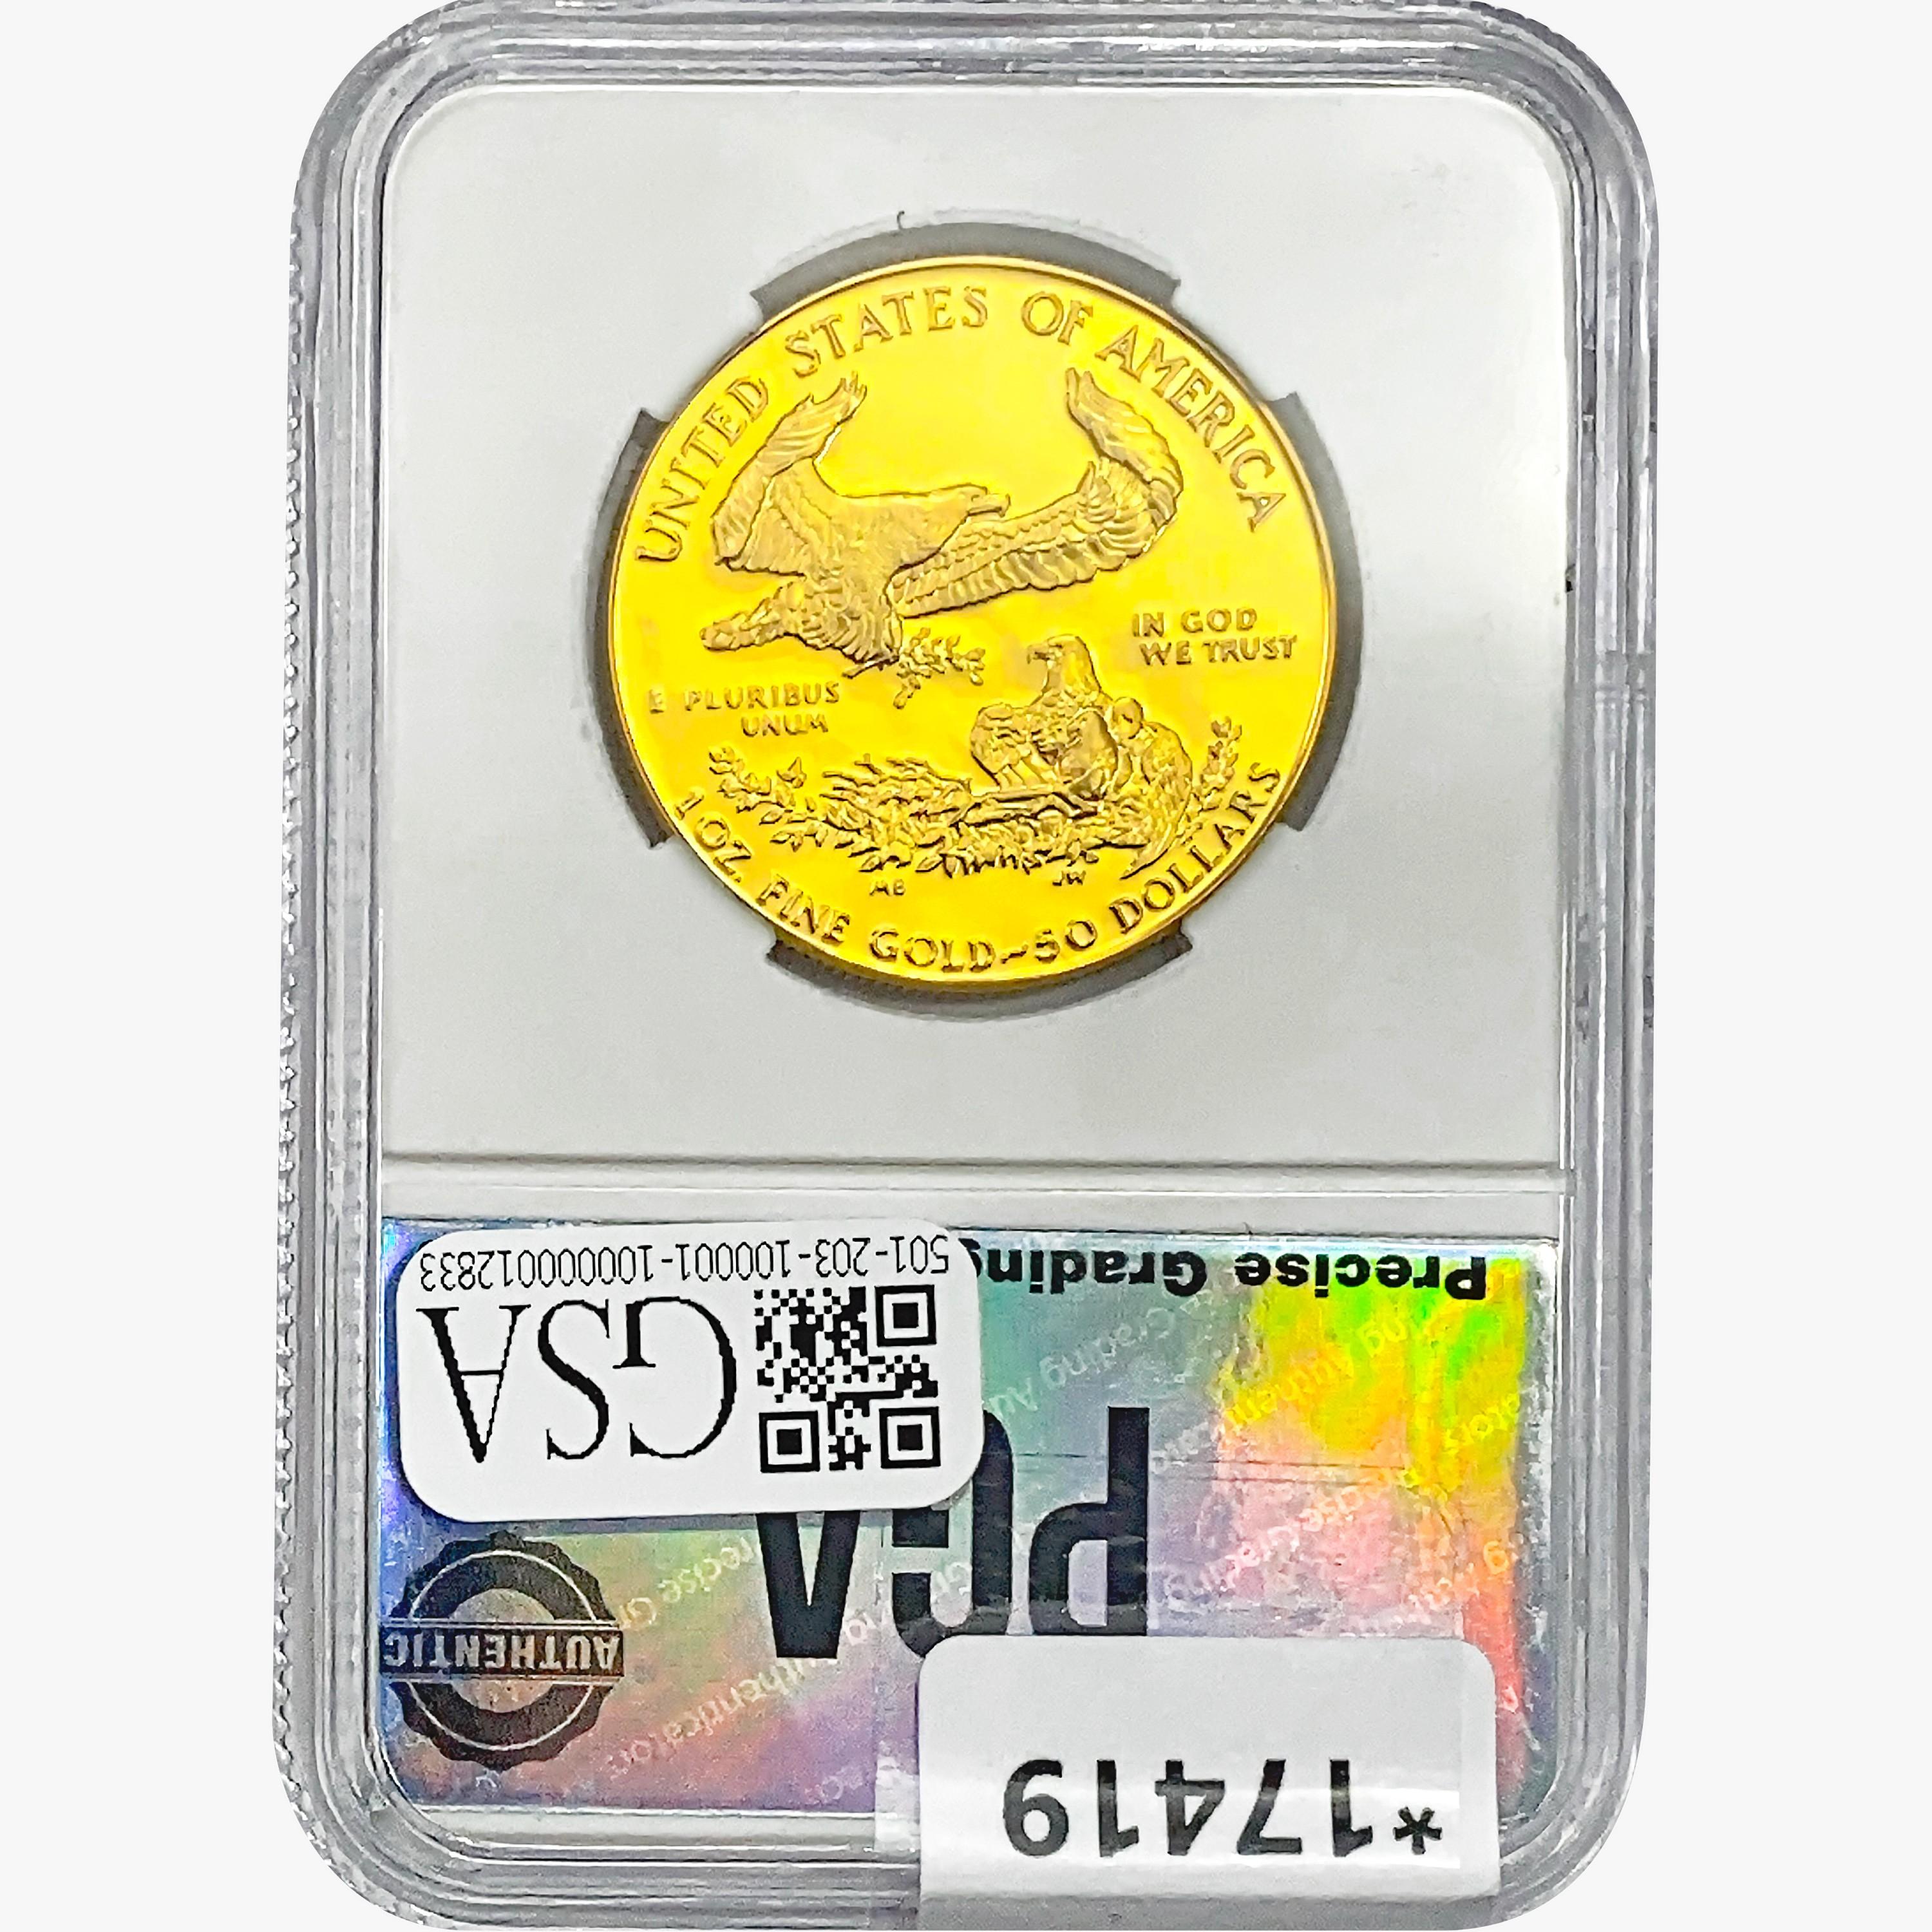 1986-W $50 1oz. Gold Eagle PGA PR70 DCAM